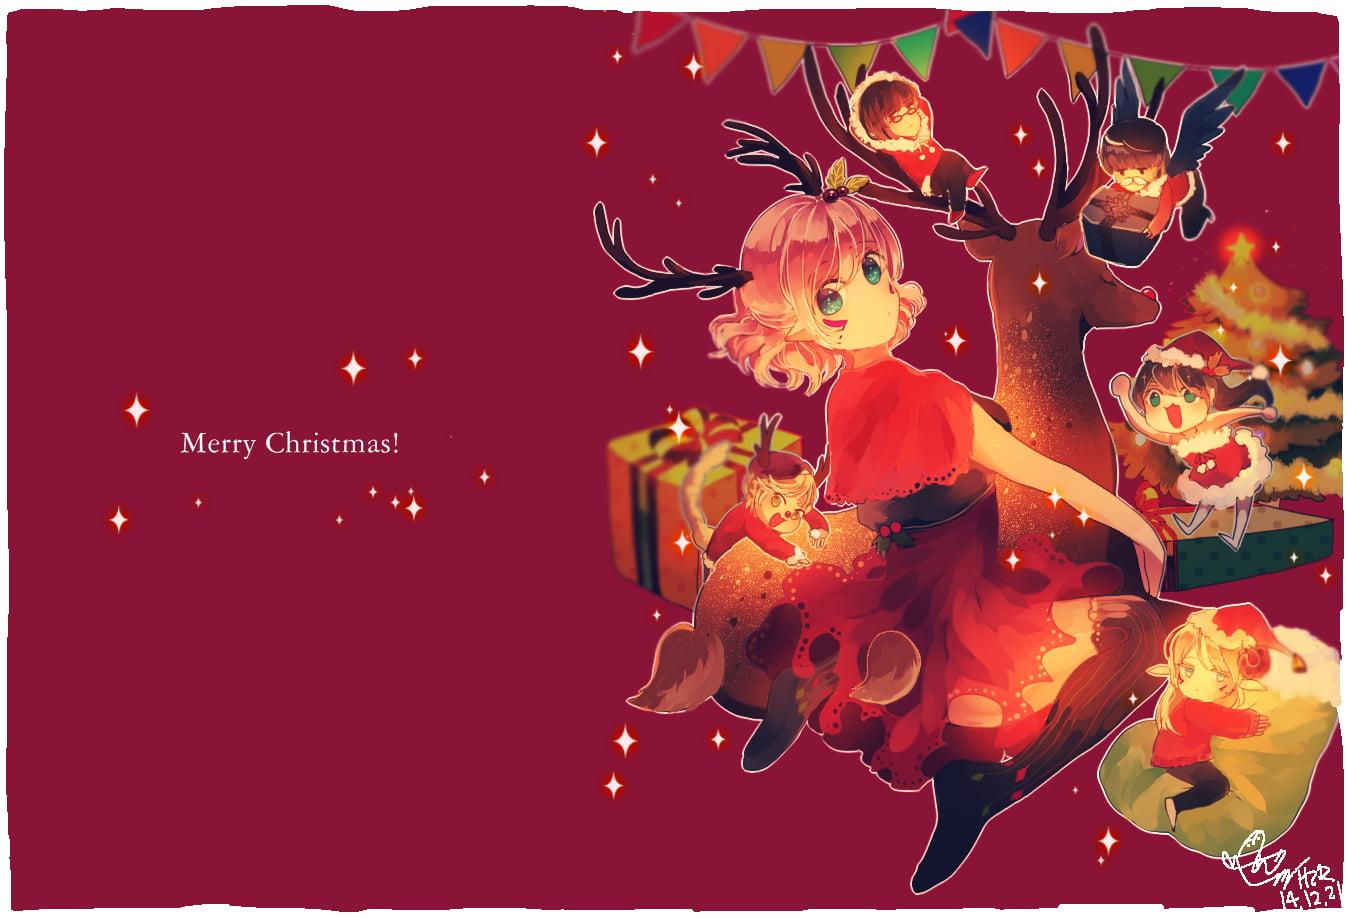 Merry Christmas wallpaper, Christmas, anime, hizrin HD